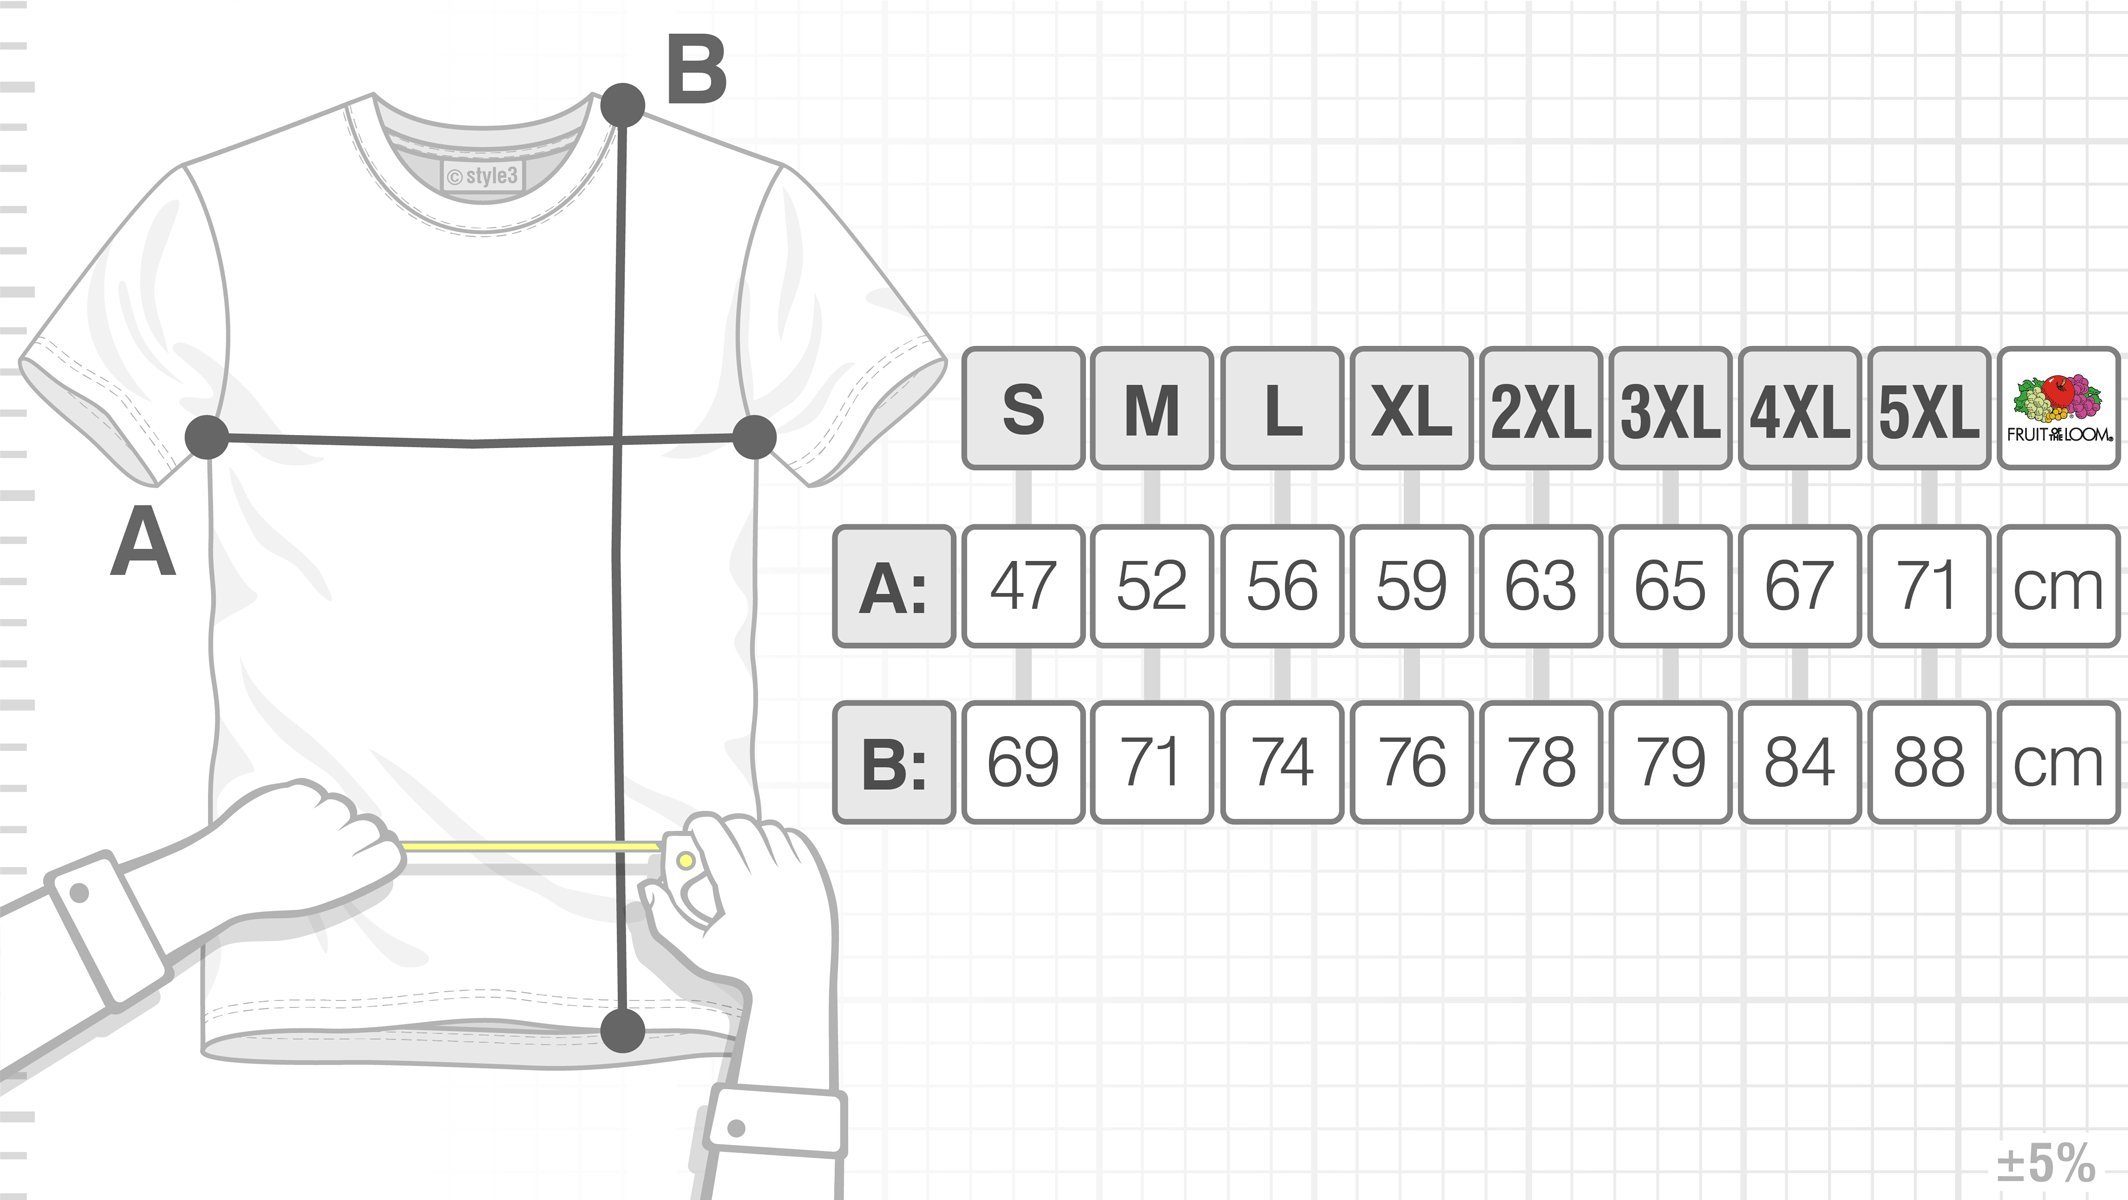 Print-Shirt Cube Penrose Herren Big T-Shirt Theory Dreieck Escher würfel Cooper bang grün style3 Sheldon